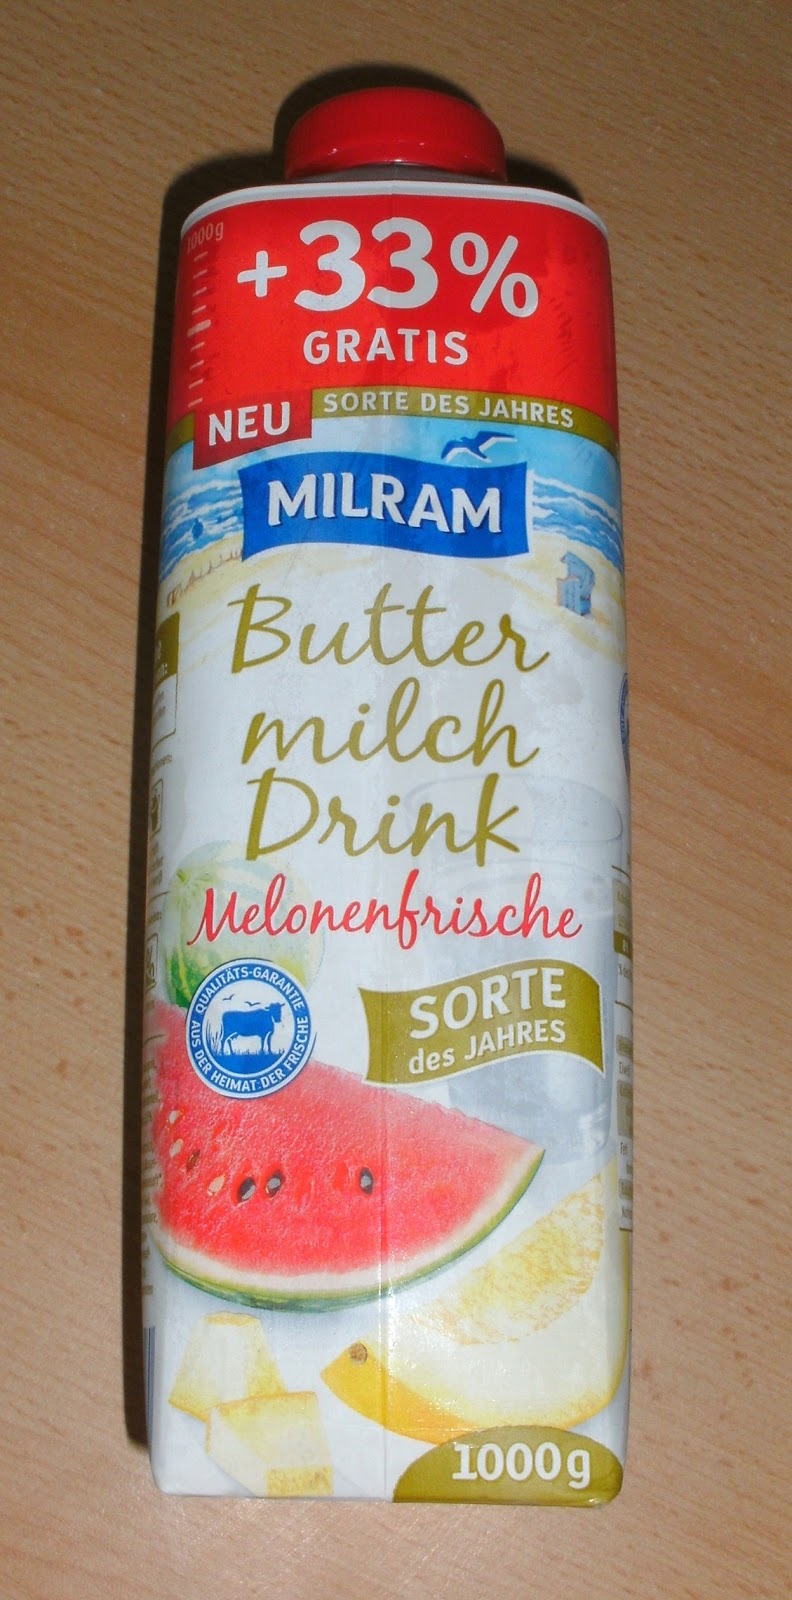 Buttermilch Drink Melonenfrische von MILRAM | Warentests praxisnah